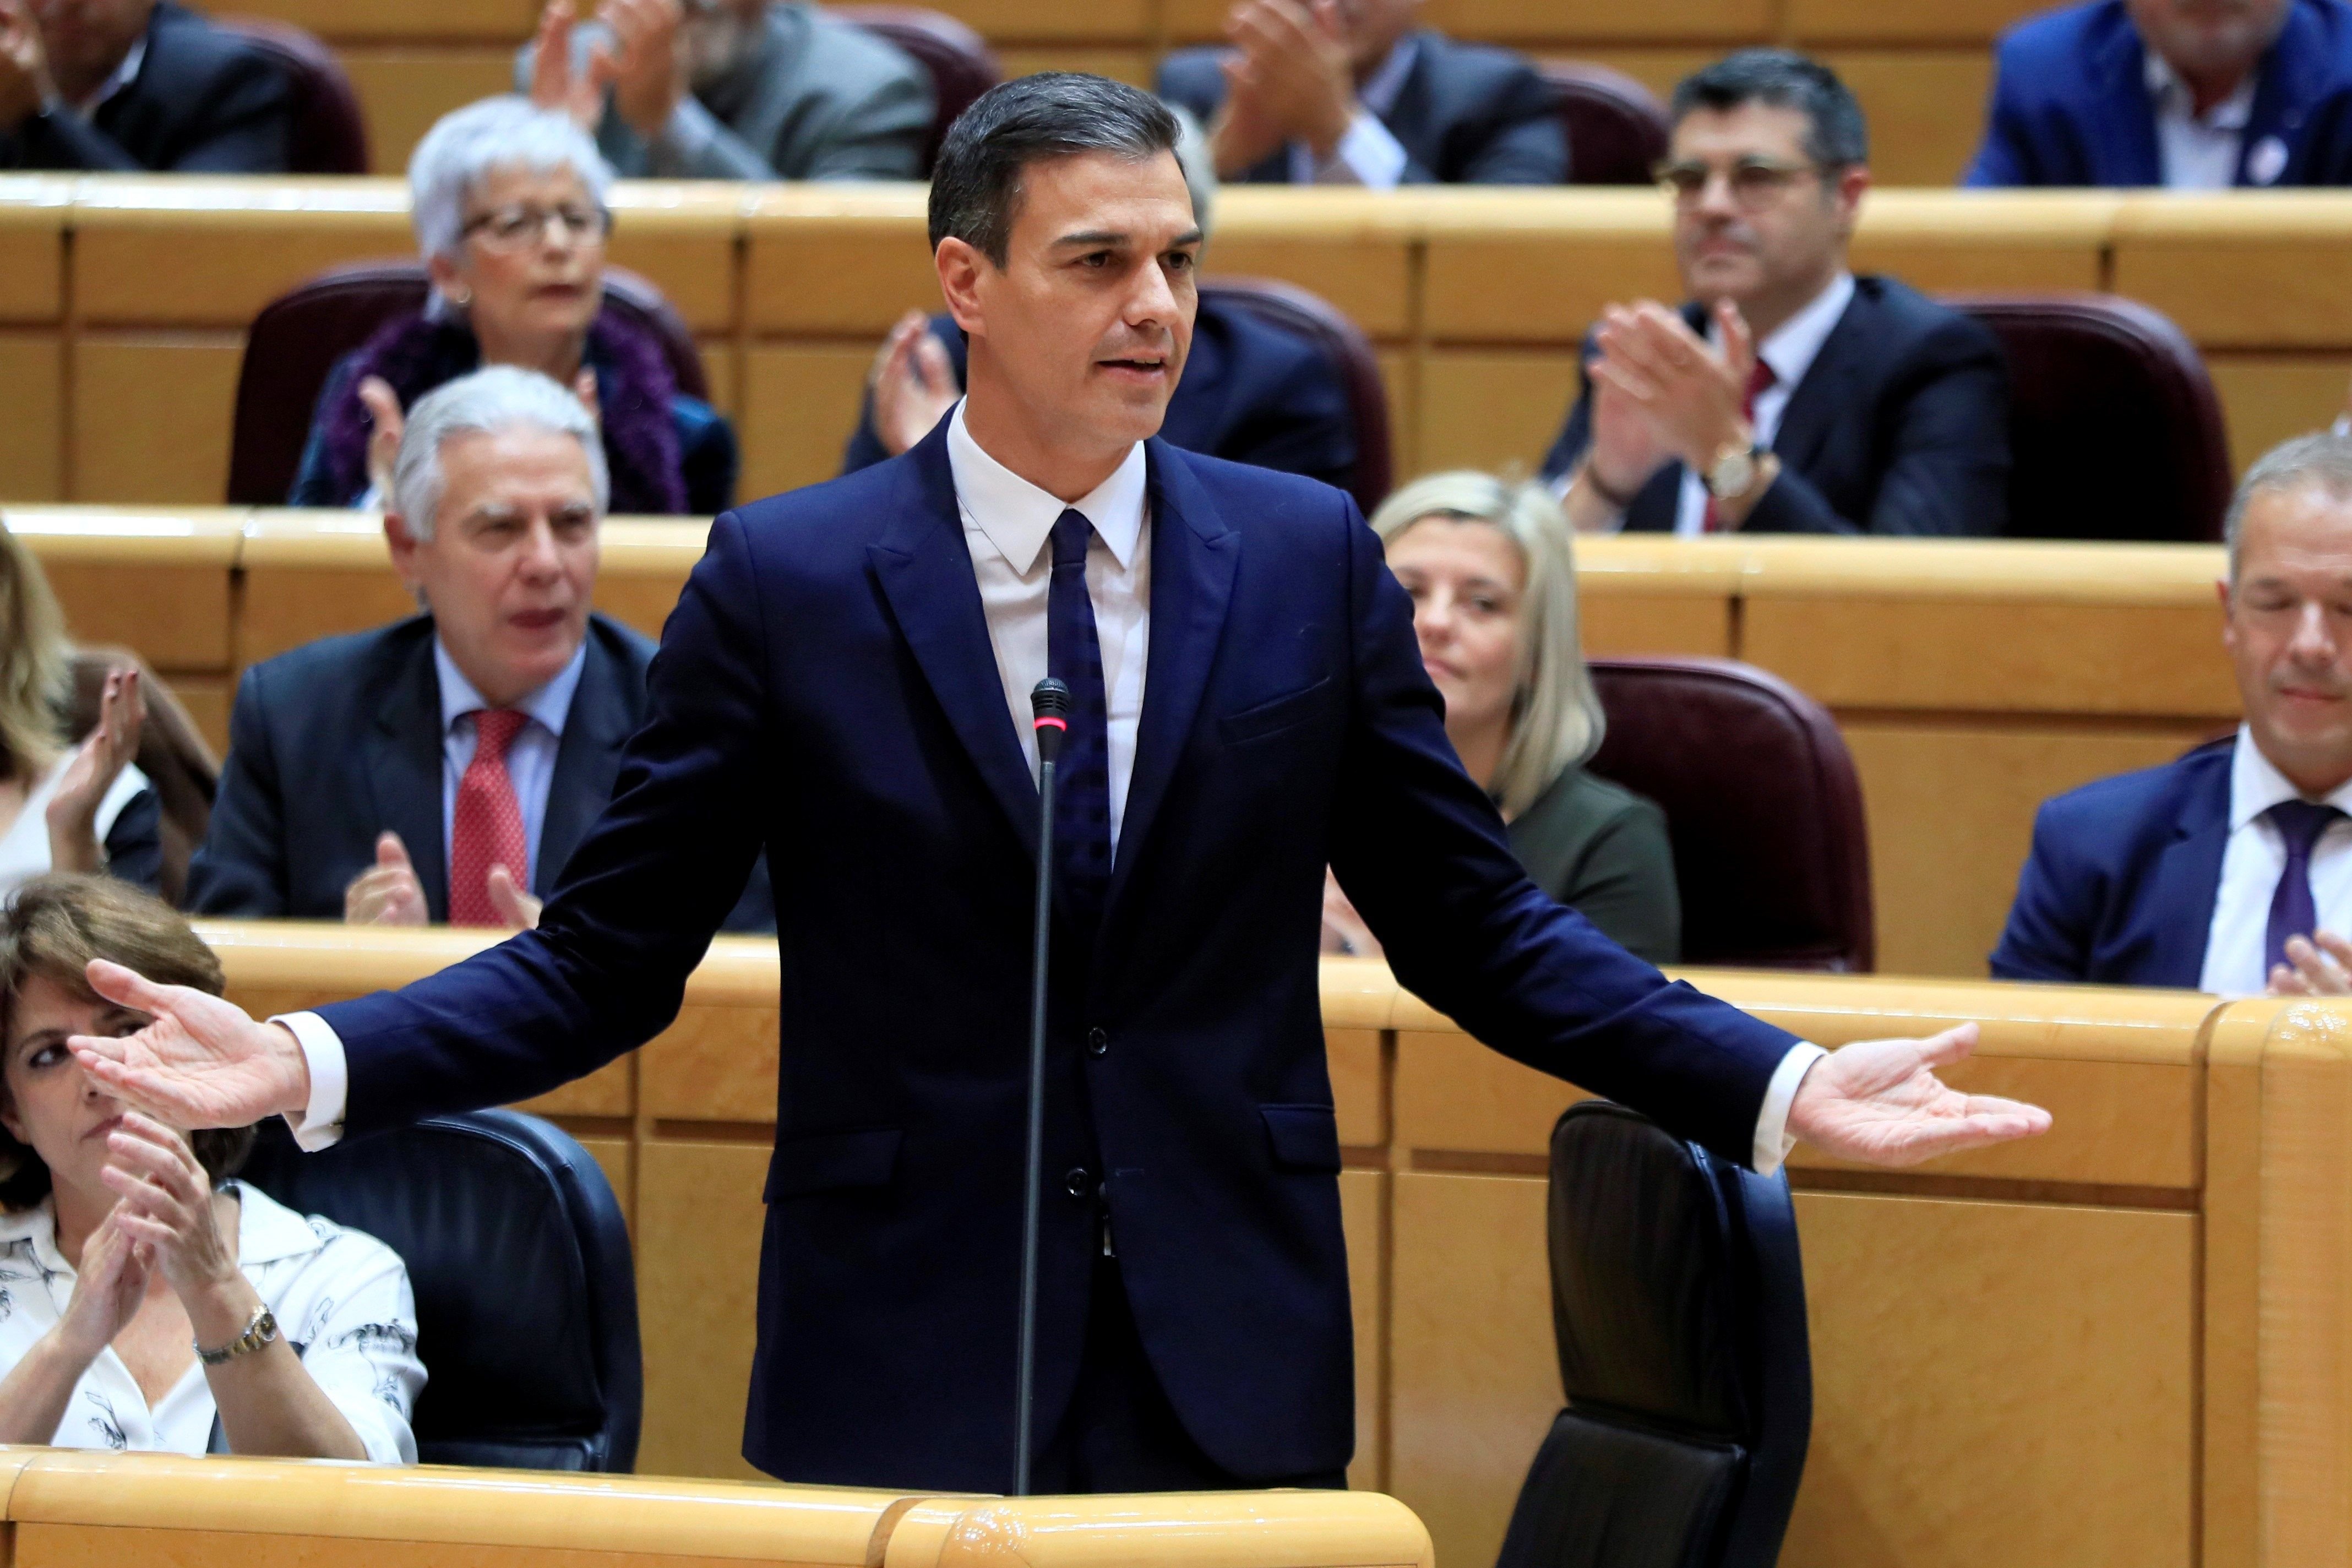 Sánchez s'acomiada del Senat apujant el to contra l'independentisme "infantil"